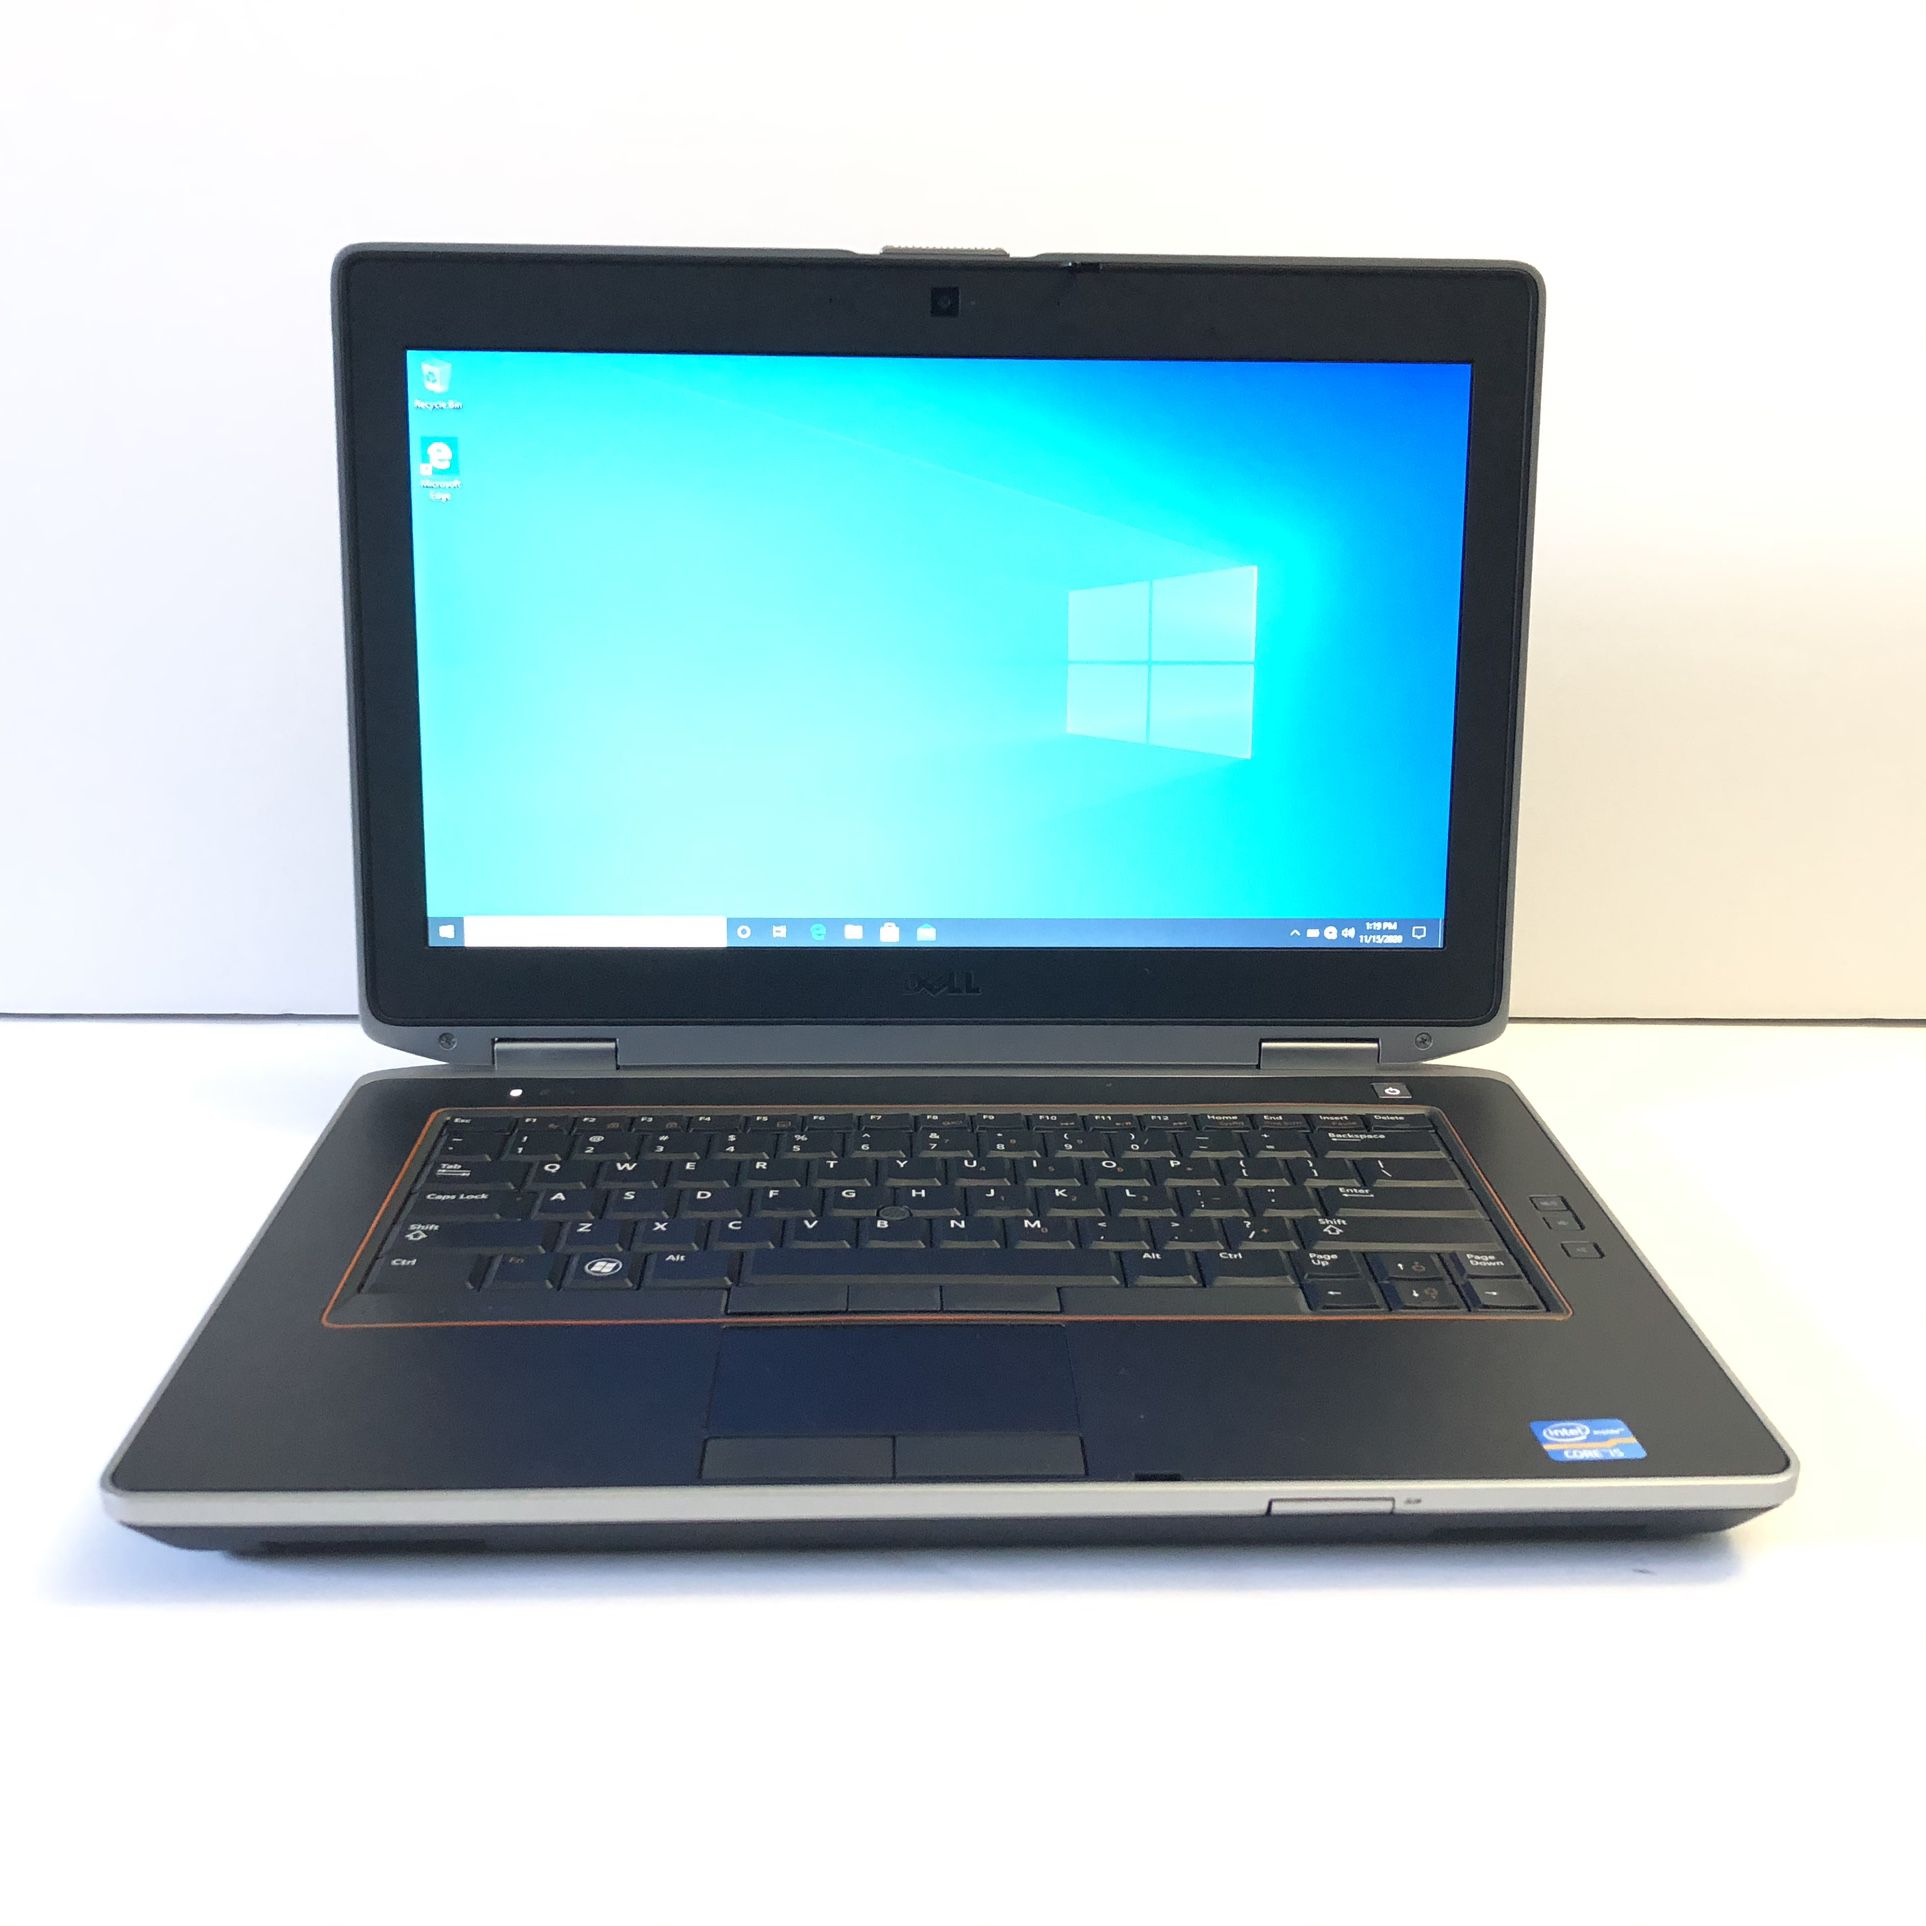 Dell Latitude E6420 i5 Quad Core Windows 10, 2GB, 250GB Laptop in Excellent Condition